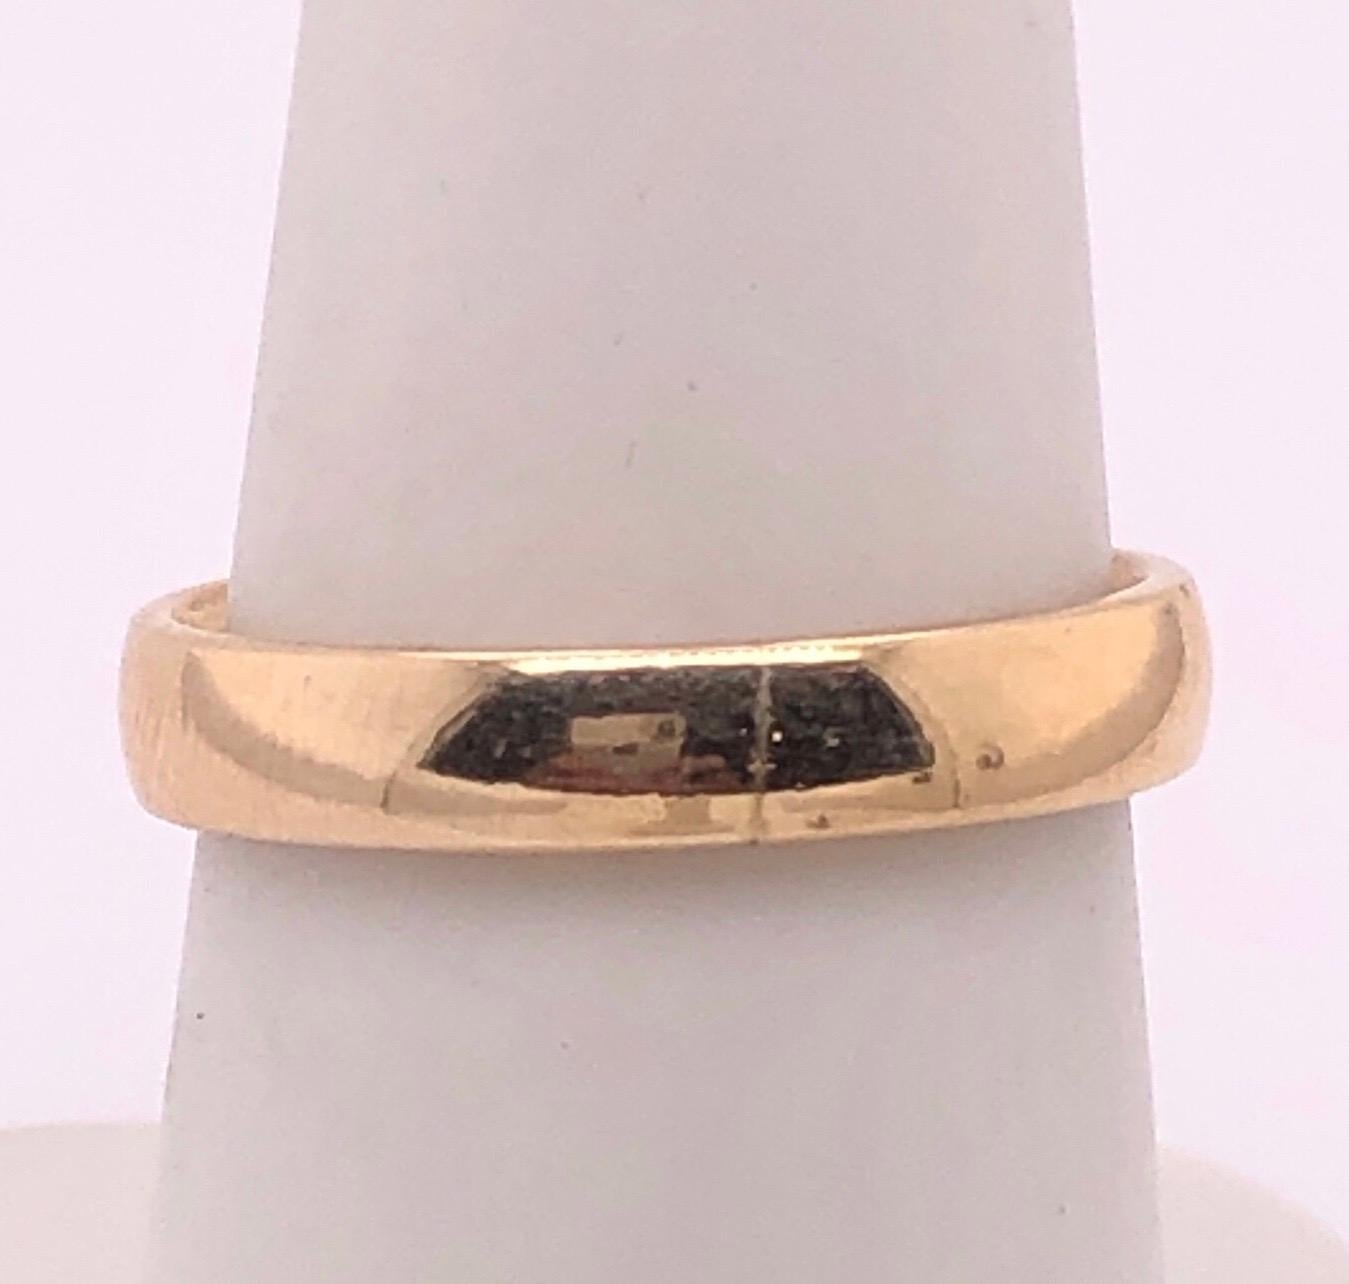 14 Karat Yellow Gold Wedding Ring  /Band Size 7.
4.2 grams total weight.